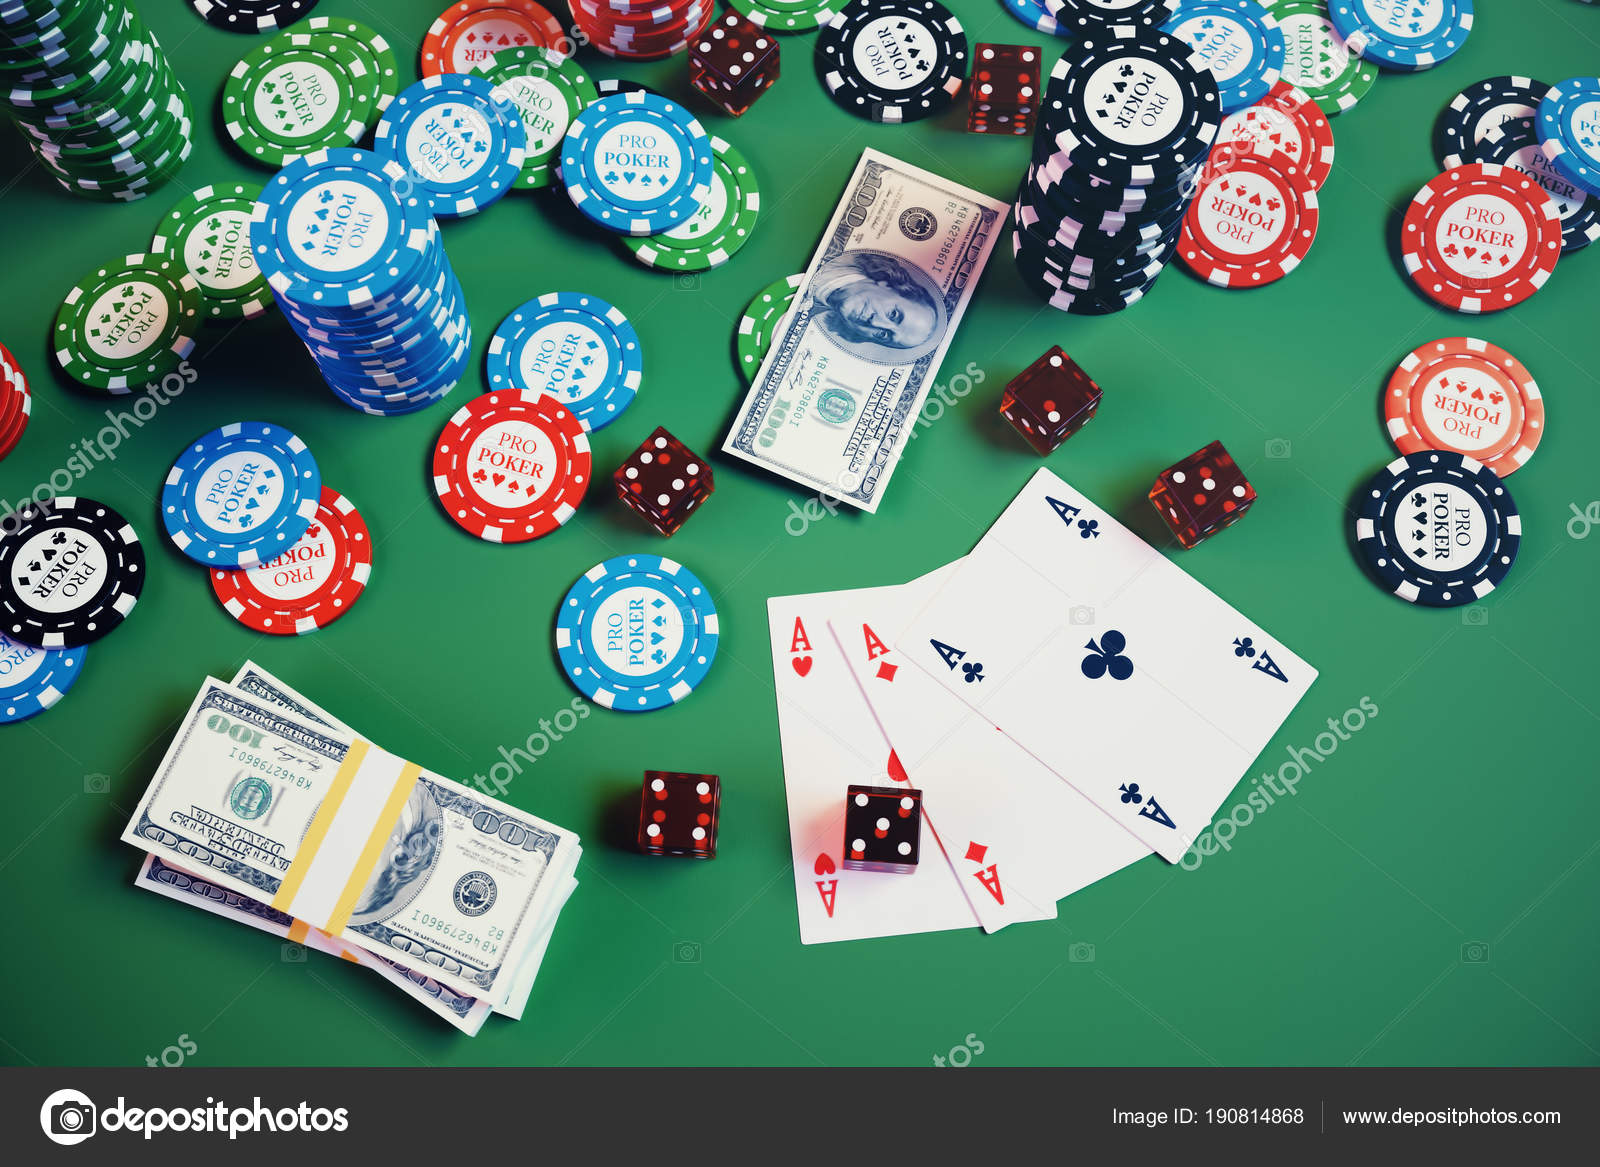 Poker chips 440955